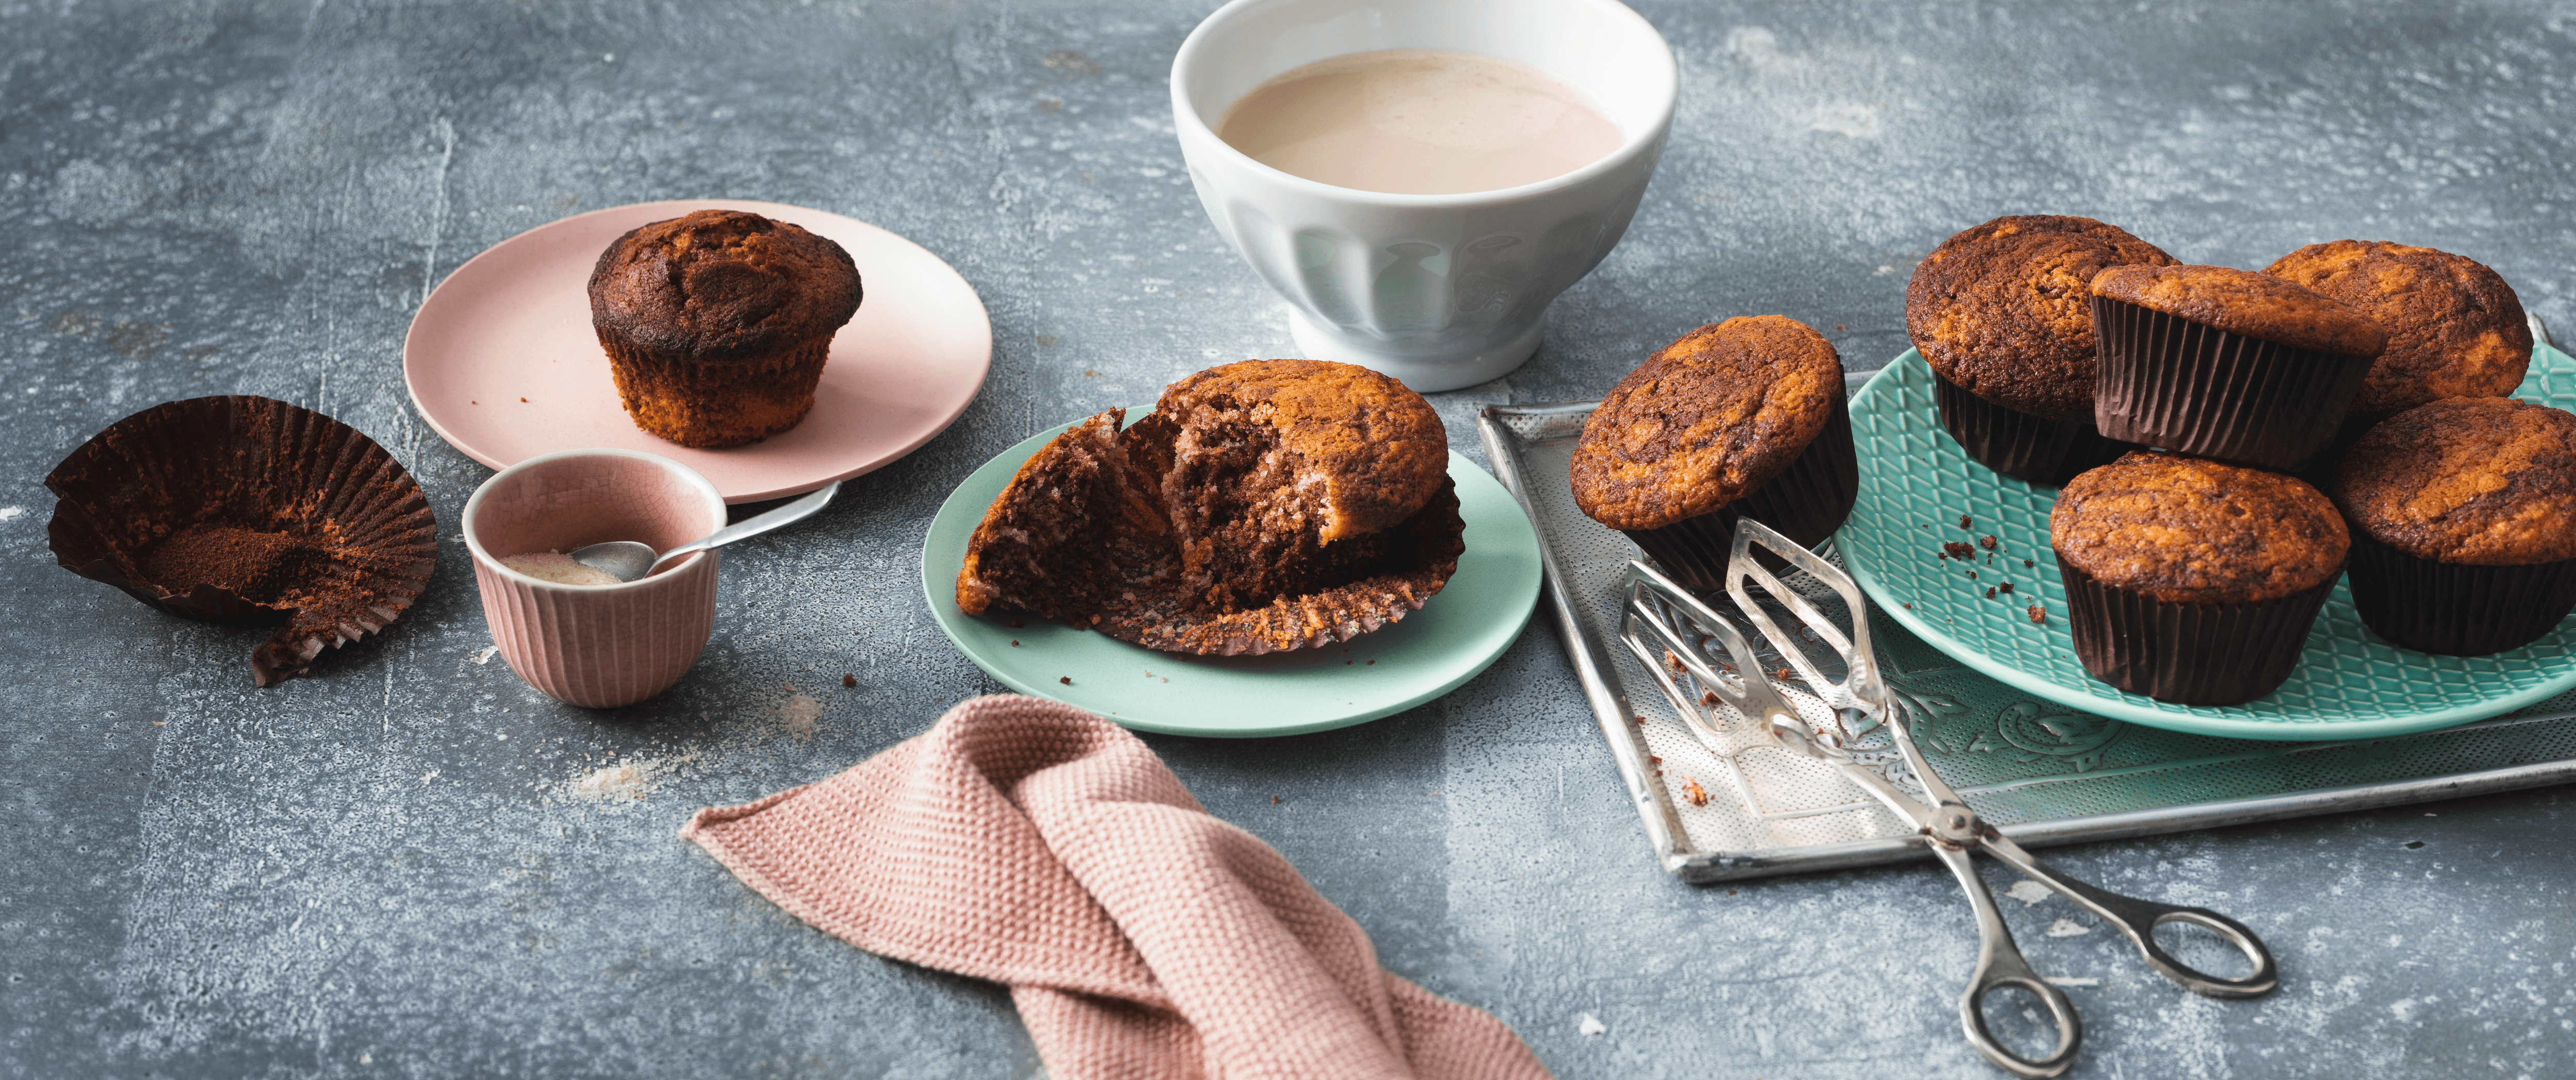 Nuss-Nougat-Creme Muffins Rezept - REWE.de